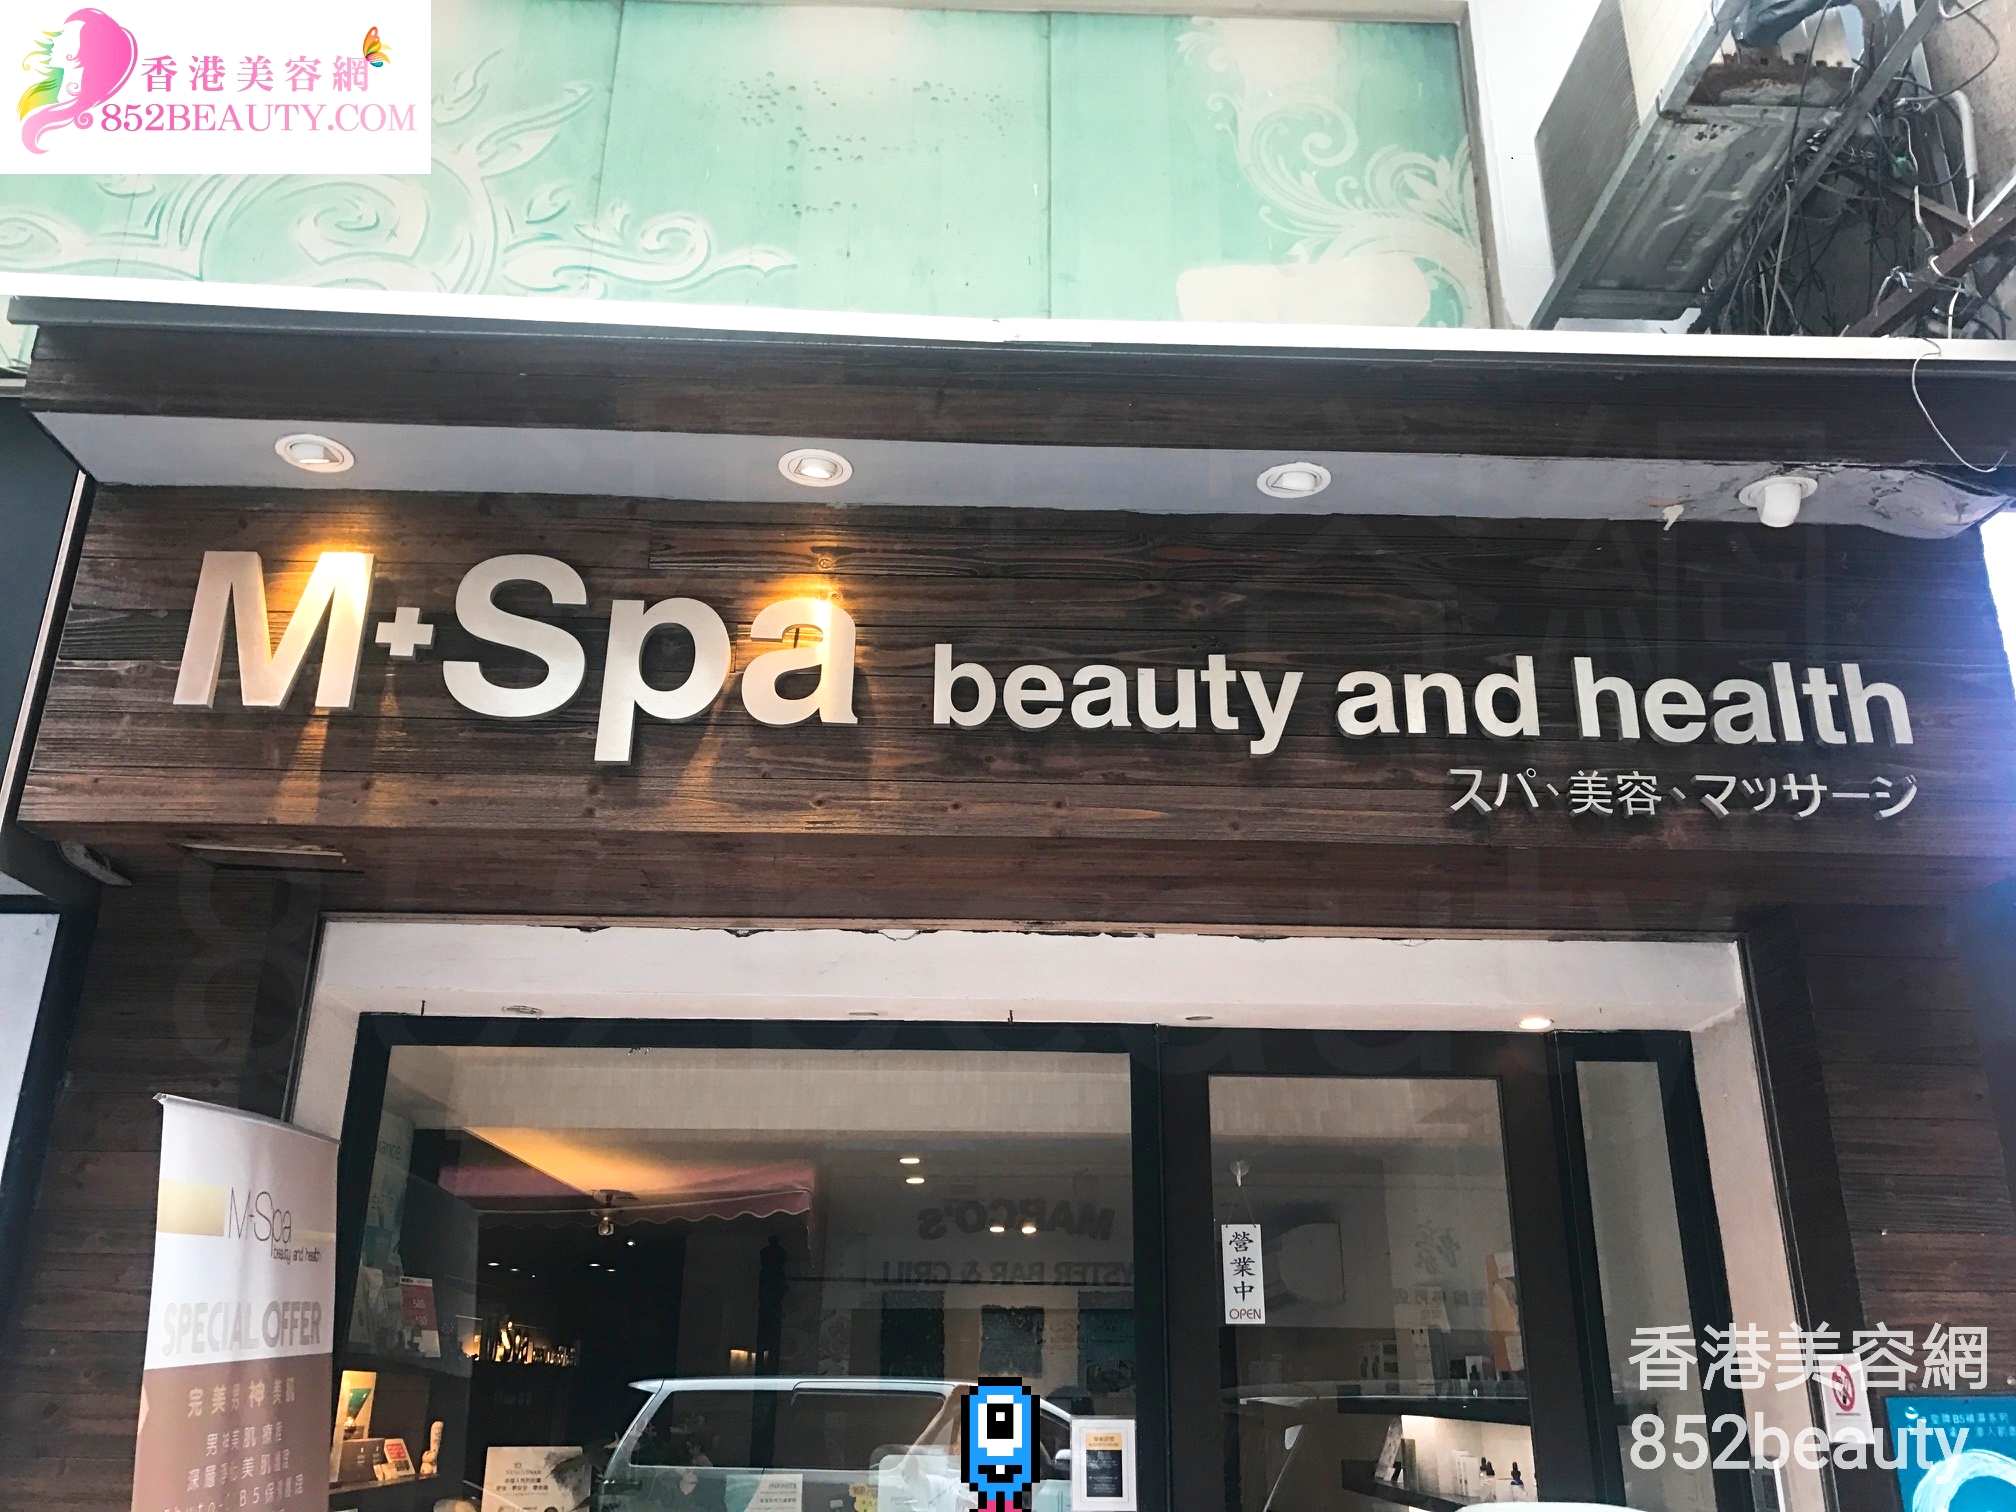 美容院: M+Spa beauty and health